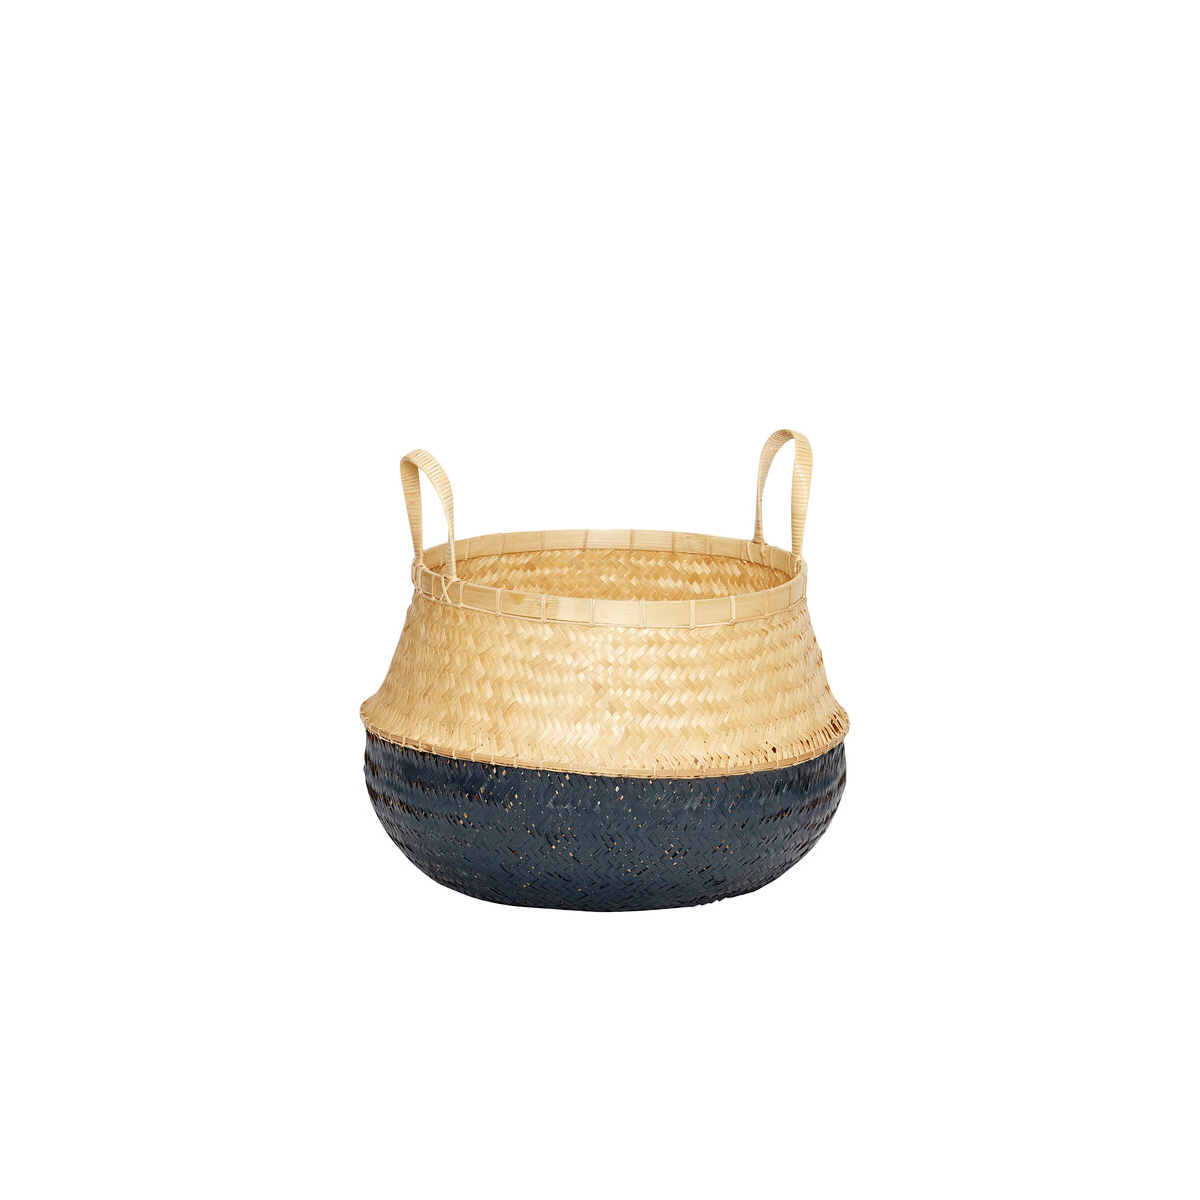 Hubsch Black/Natural Rattan Belly Basket in Large